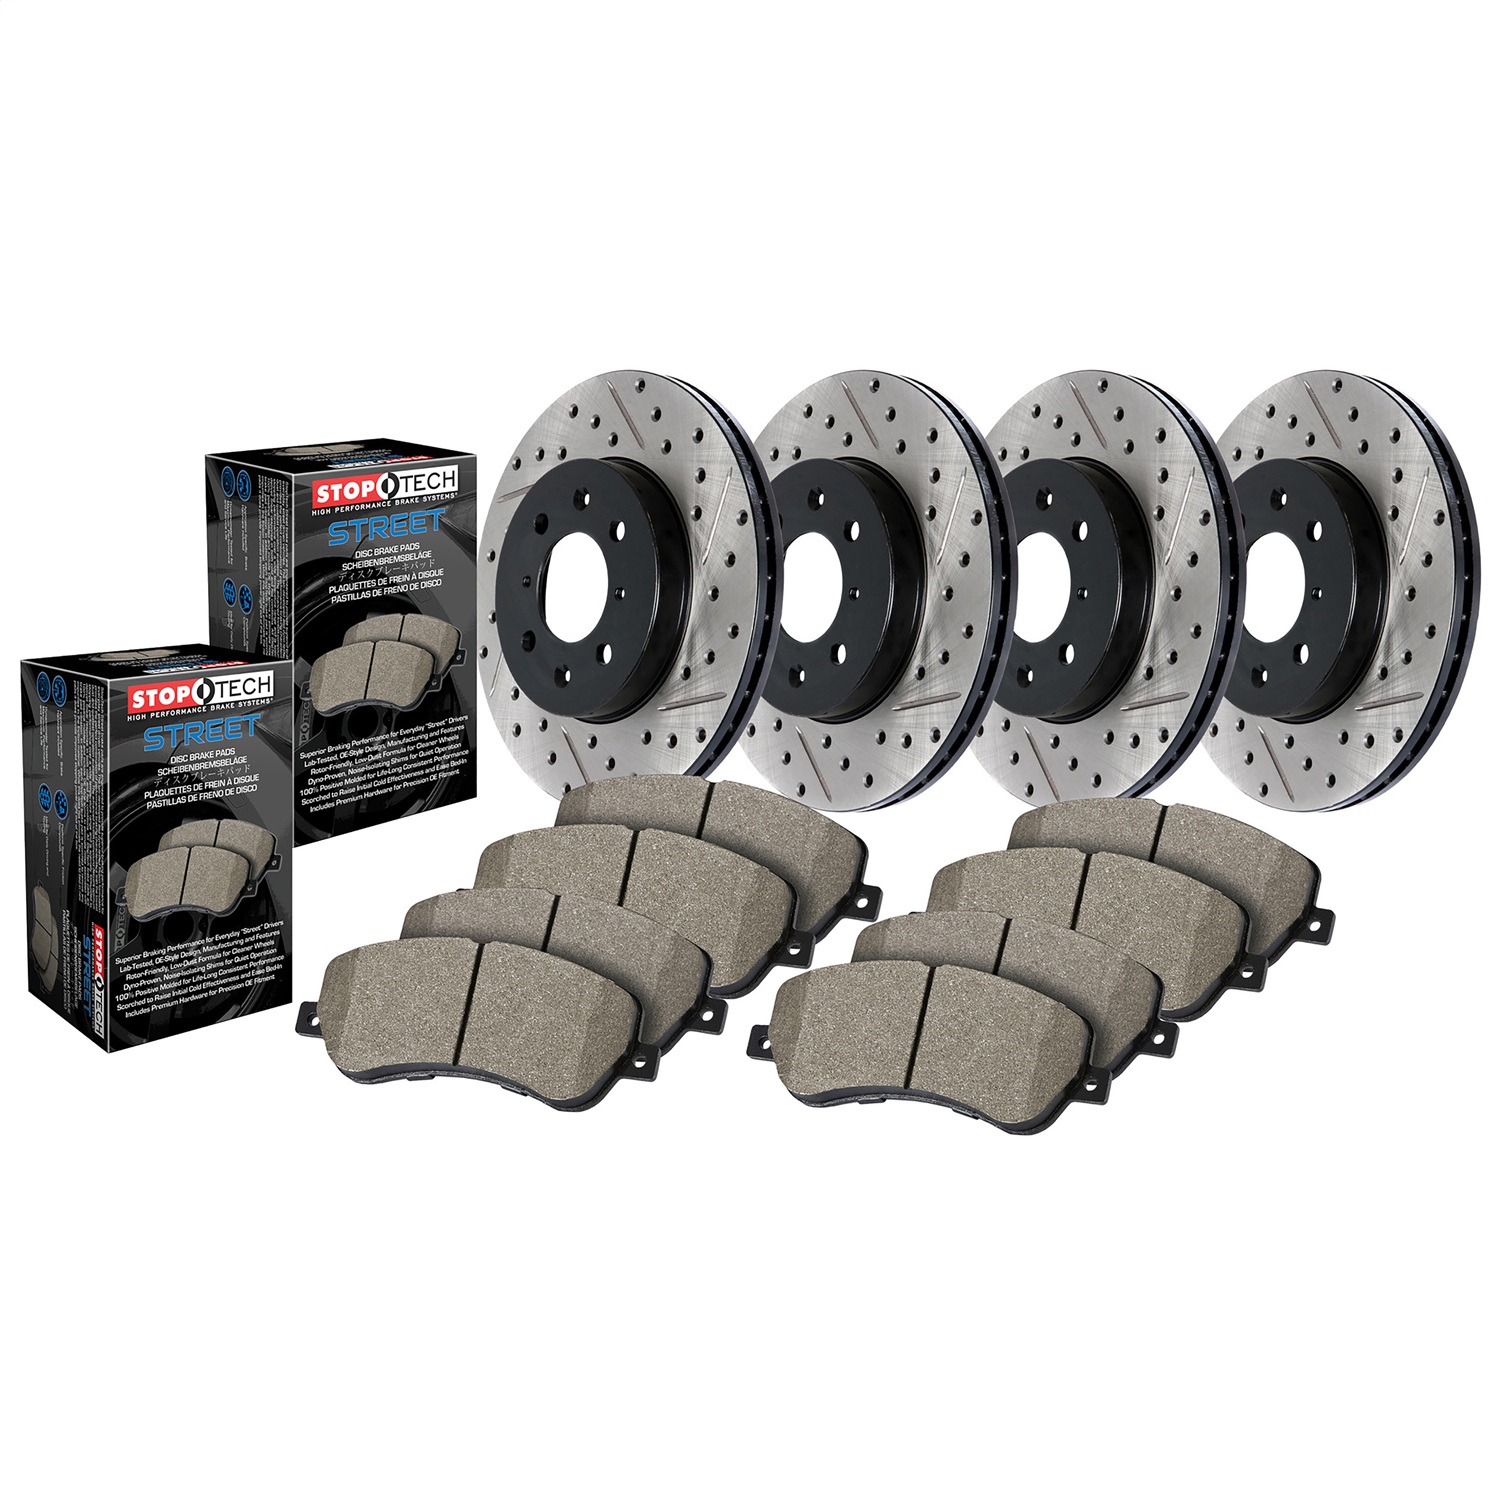 StopTech 935.40036 Disc Brake Upgrade Kit